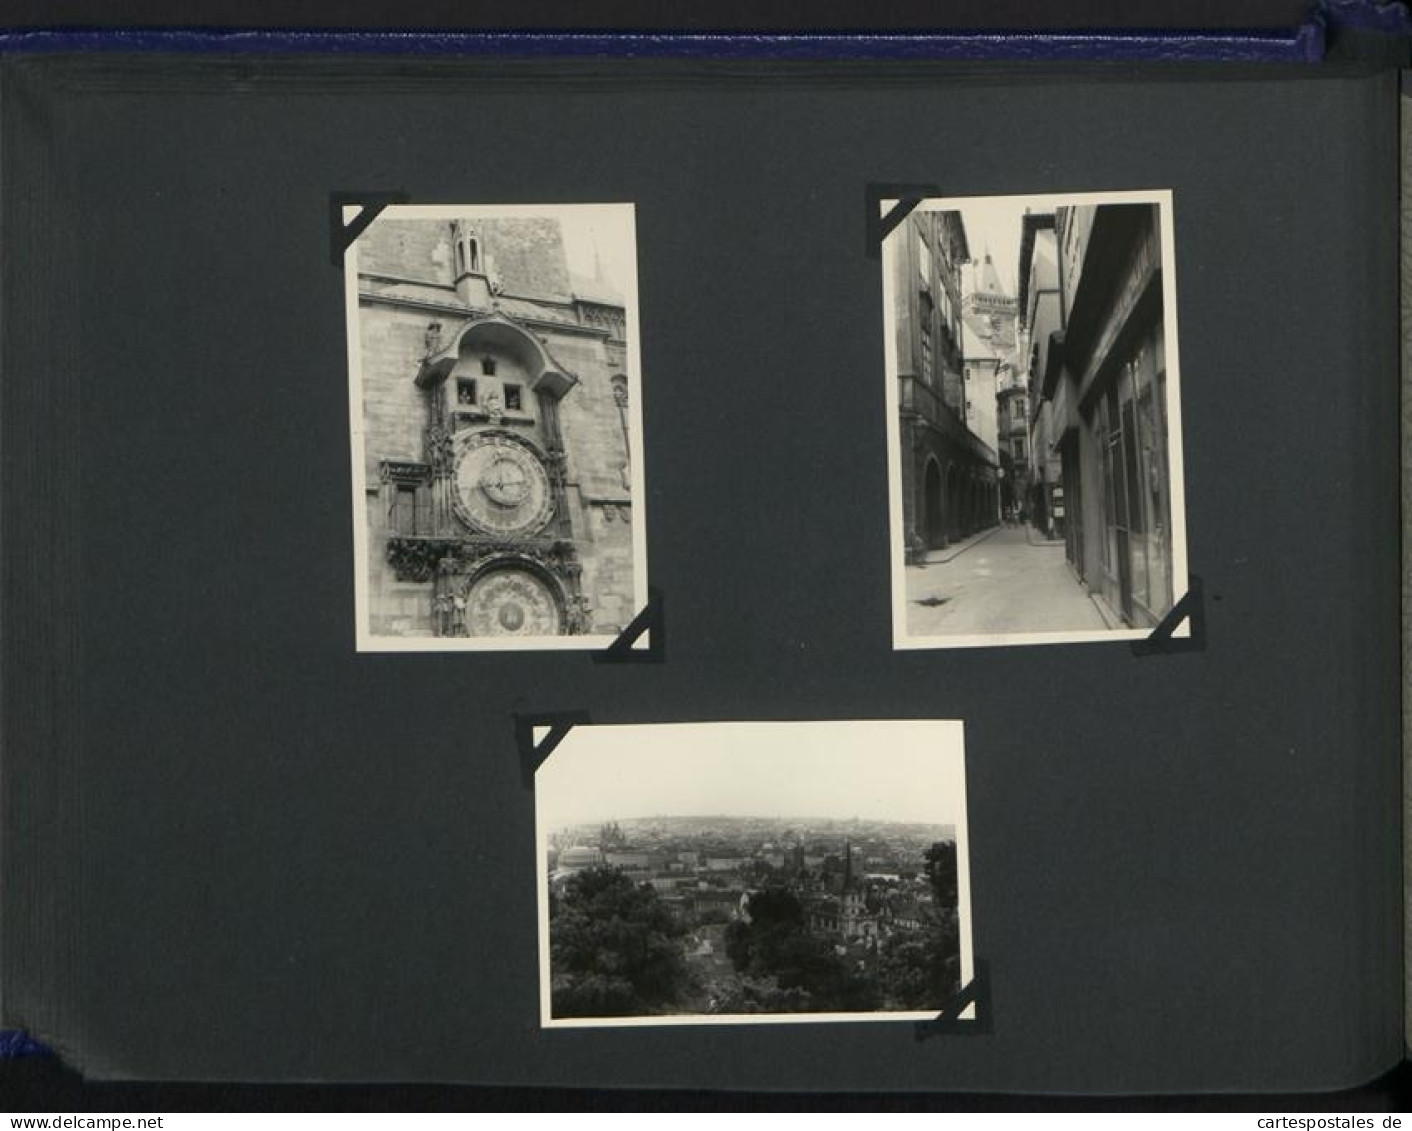 Fotoalbum mit 132 Fotografien, Deutscher Praktikant in der Tschechoslowakei CSSR 1960, Ostrava, Prag 